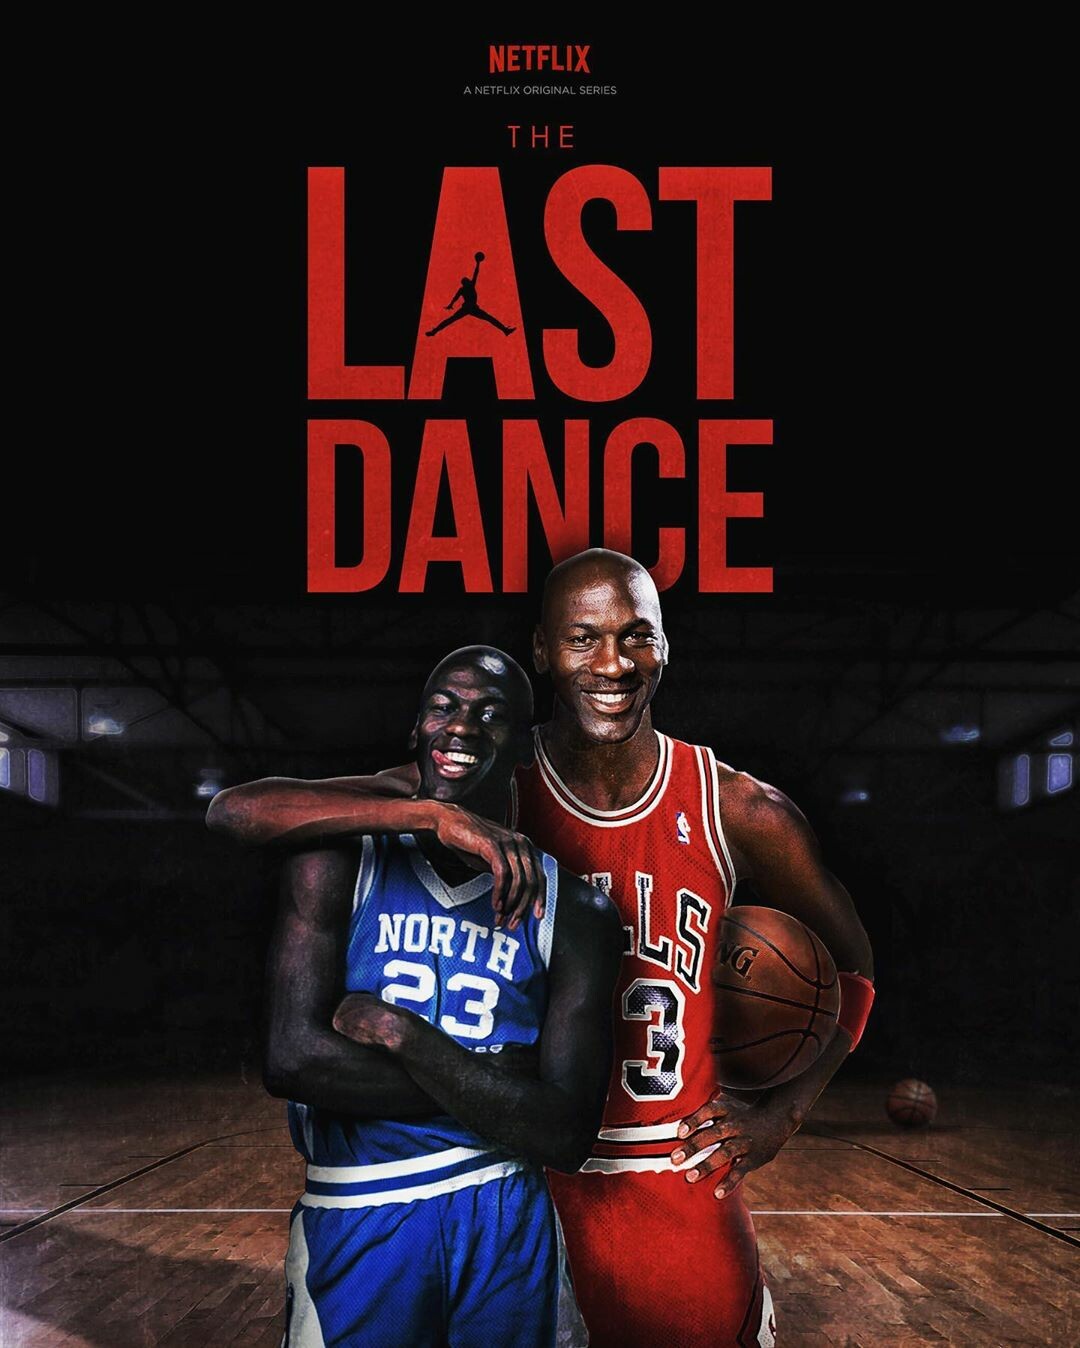 Michael Jordan The Last Dance Wallpapers  Wallpaper Cave